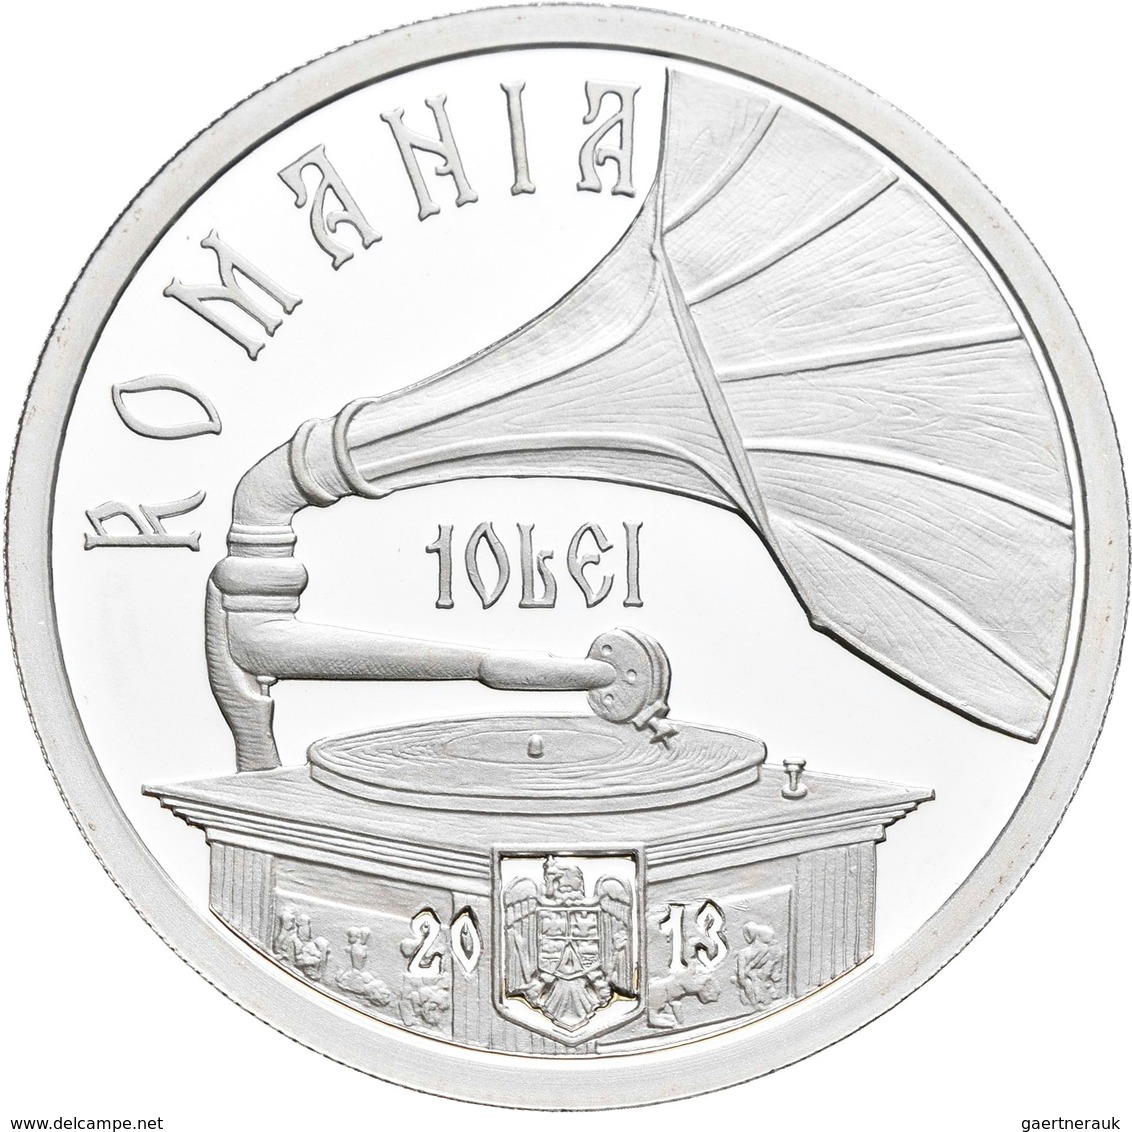 Rumänien: 10 Lei 2013, 100. Geburtstag Maria Tanase. KM# N.b. 31,103 G (1 OZ), 999/1000 Silber. Aufl - Roumanie